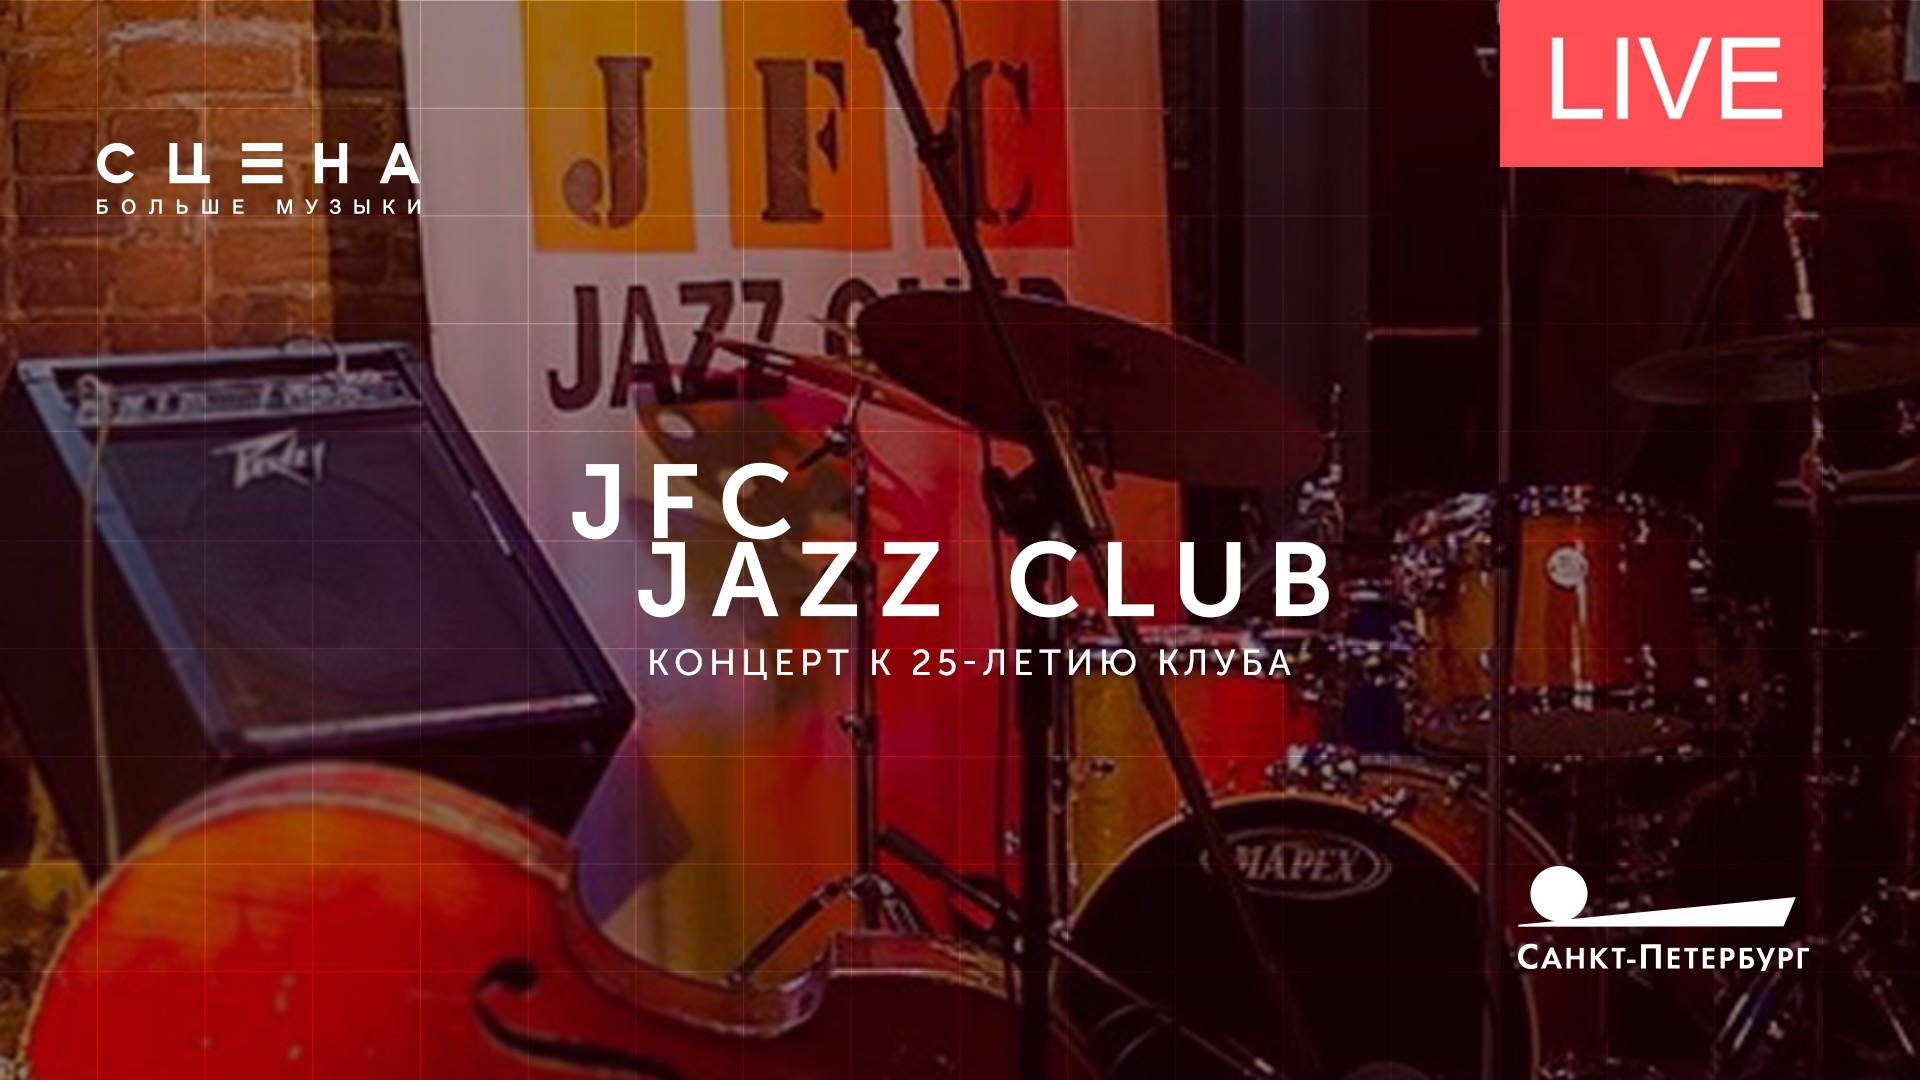 Джаз клуб концерт. JFC джаз клуб. JFC Jazz Club зал.